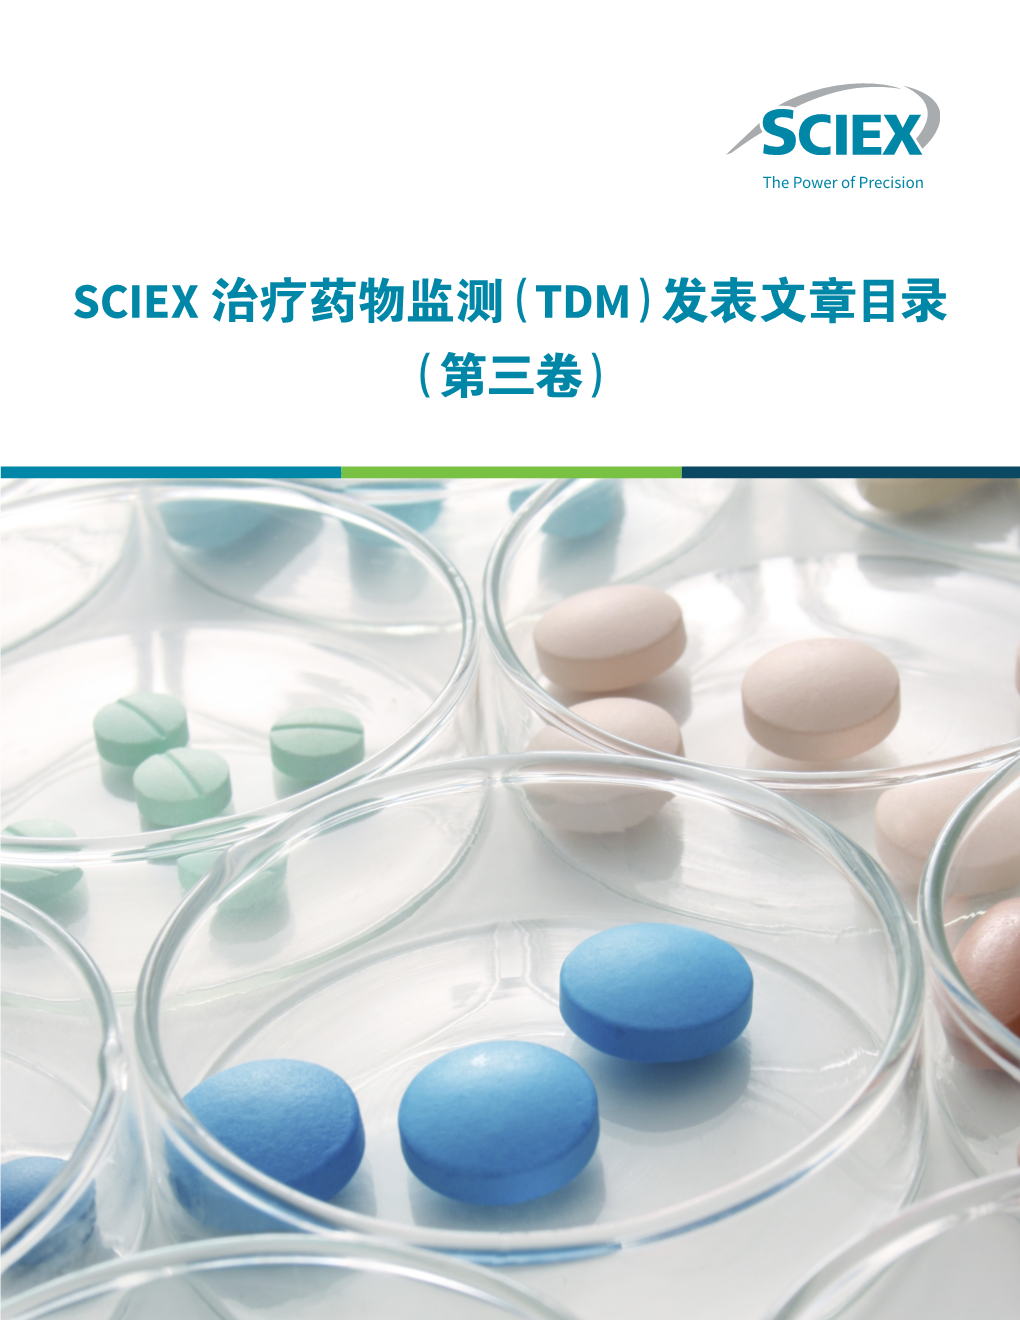 Sciex 治疗药物监测（Tdm）发表文章目录（第三卷） 2 9